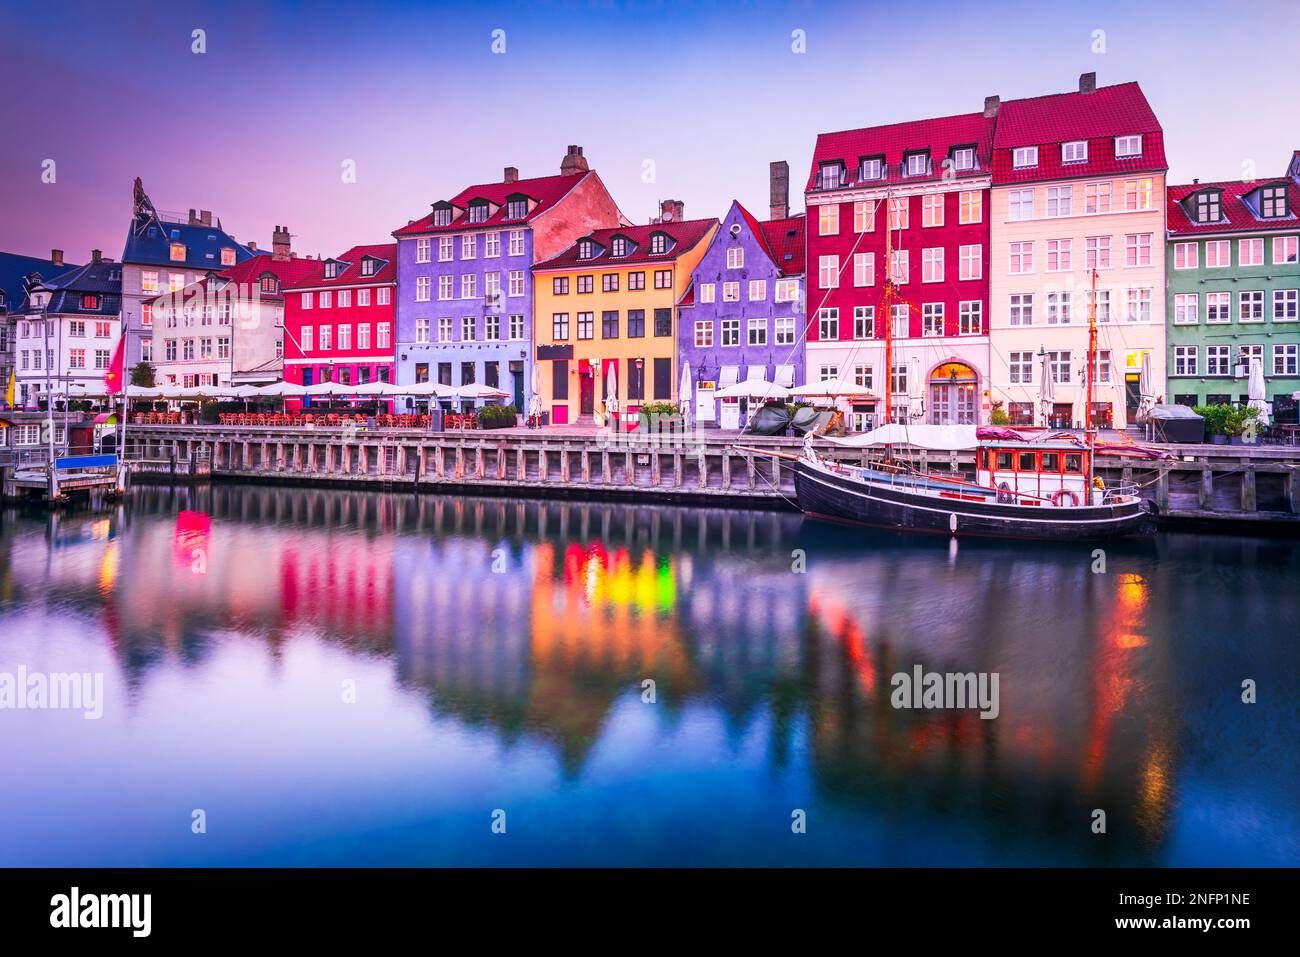 Kobenhavn, Danimarca. Nyhavn, l'iconico canale di Copenaghen, riflette edifici colorati e lampi al crepuscolo, creando un tour pittoresco Foto Stock